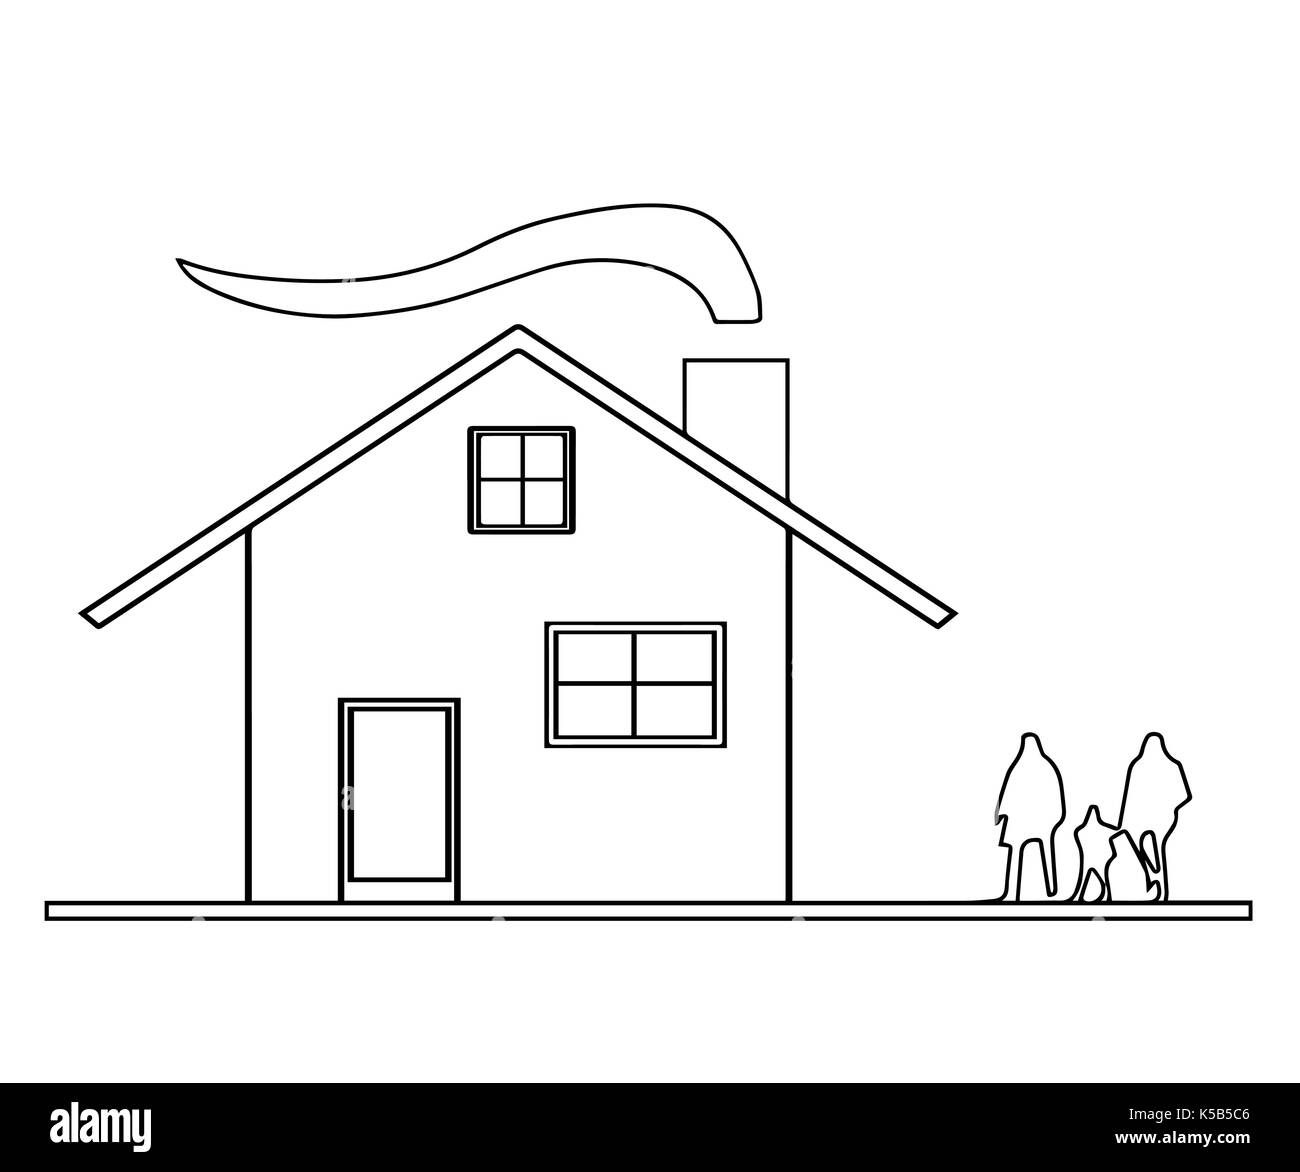 Dibujo De Una Casa Con Chimenea Stock de ilustración - Ilustración de  verano, historieta: 209137882